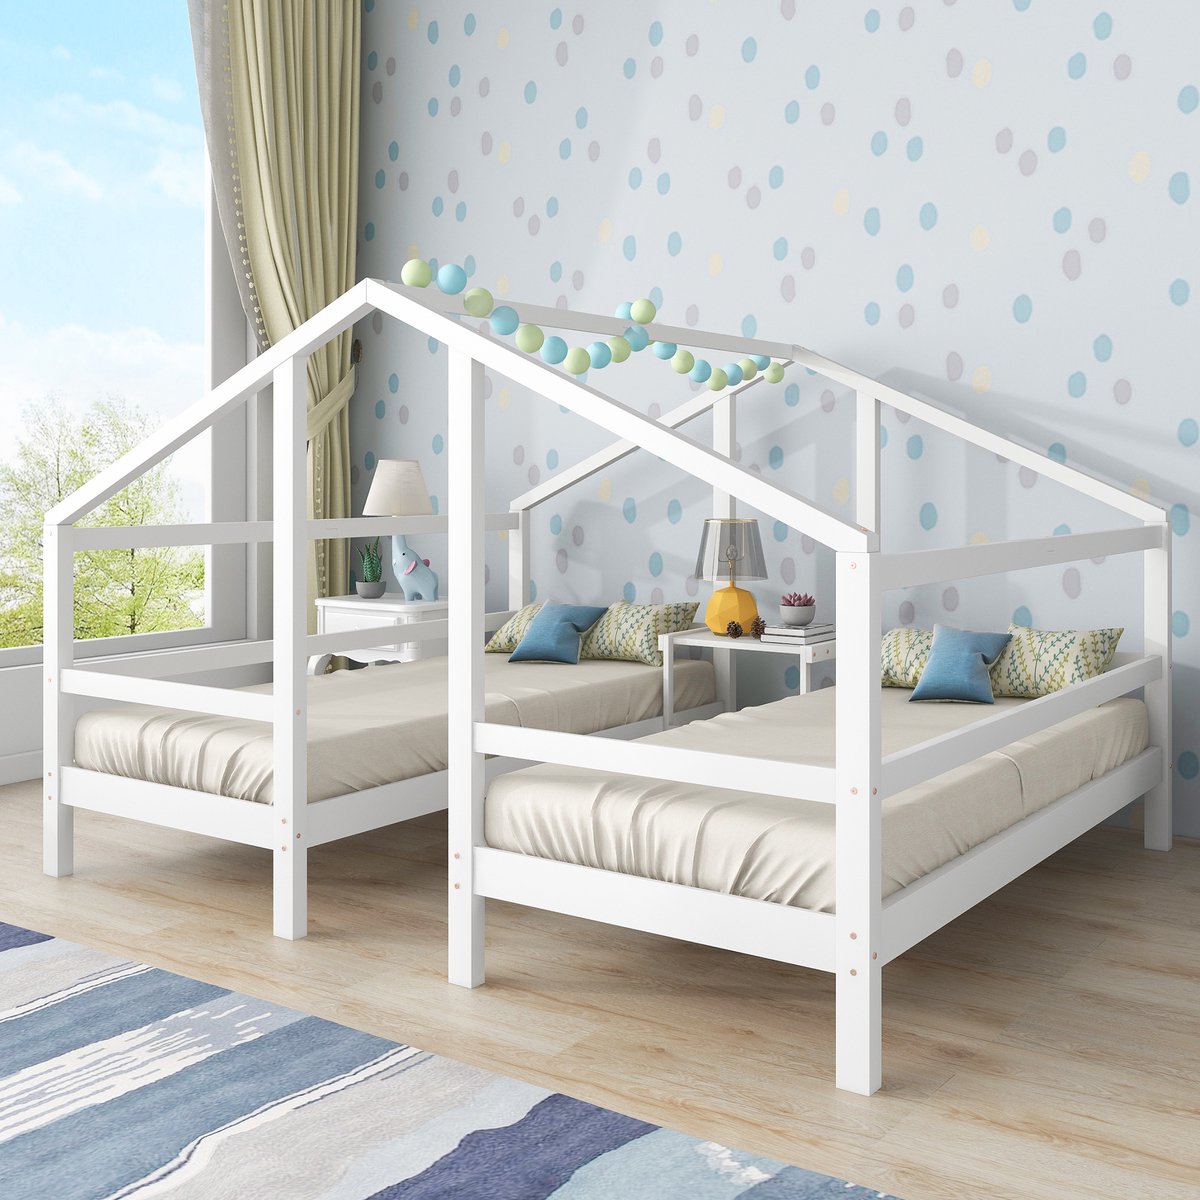 Huisbed voor 2 kinderen - twee eenpersoonsbedden onder één dak - ontwerp huisbed met nachtkastje en lattenbodem met valbeveiliging - jeugdbed 90 X 200 - wit